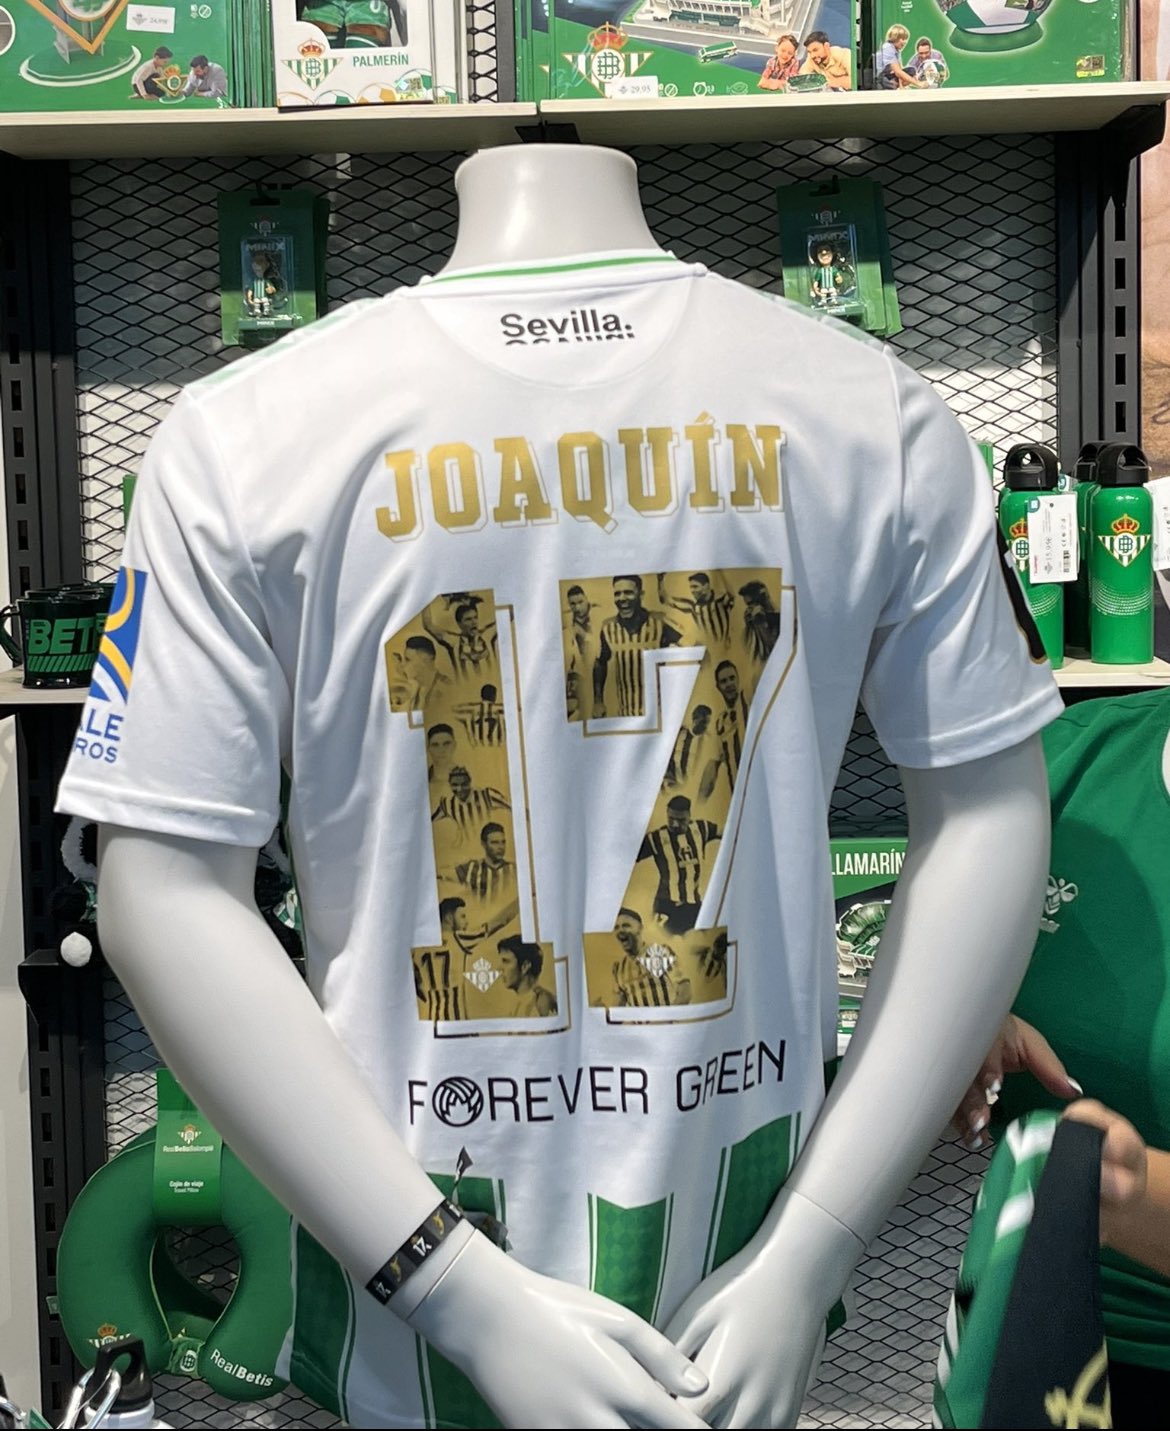 𝙎𝙞𝙚𝙢𝙥𝙧𝙚 𝙁𝙪𝙚𝙧𝙩𝙚 on Twitter: HORA | 🟢 Así la camiseta que lleven los jugadores, en el partido homenaje de nuestro capitán Joaquín Sánchez el 6 de Junio. 𝐓𝐇𝐄 𝐋𝐀𝐒𝐓